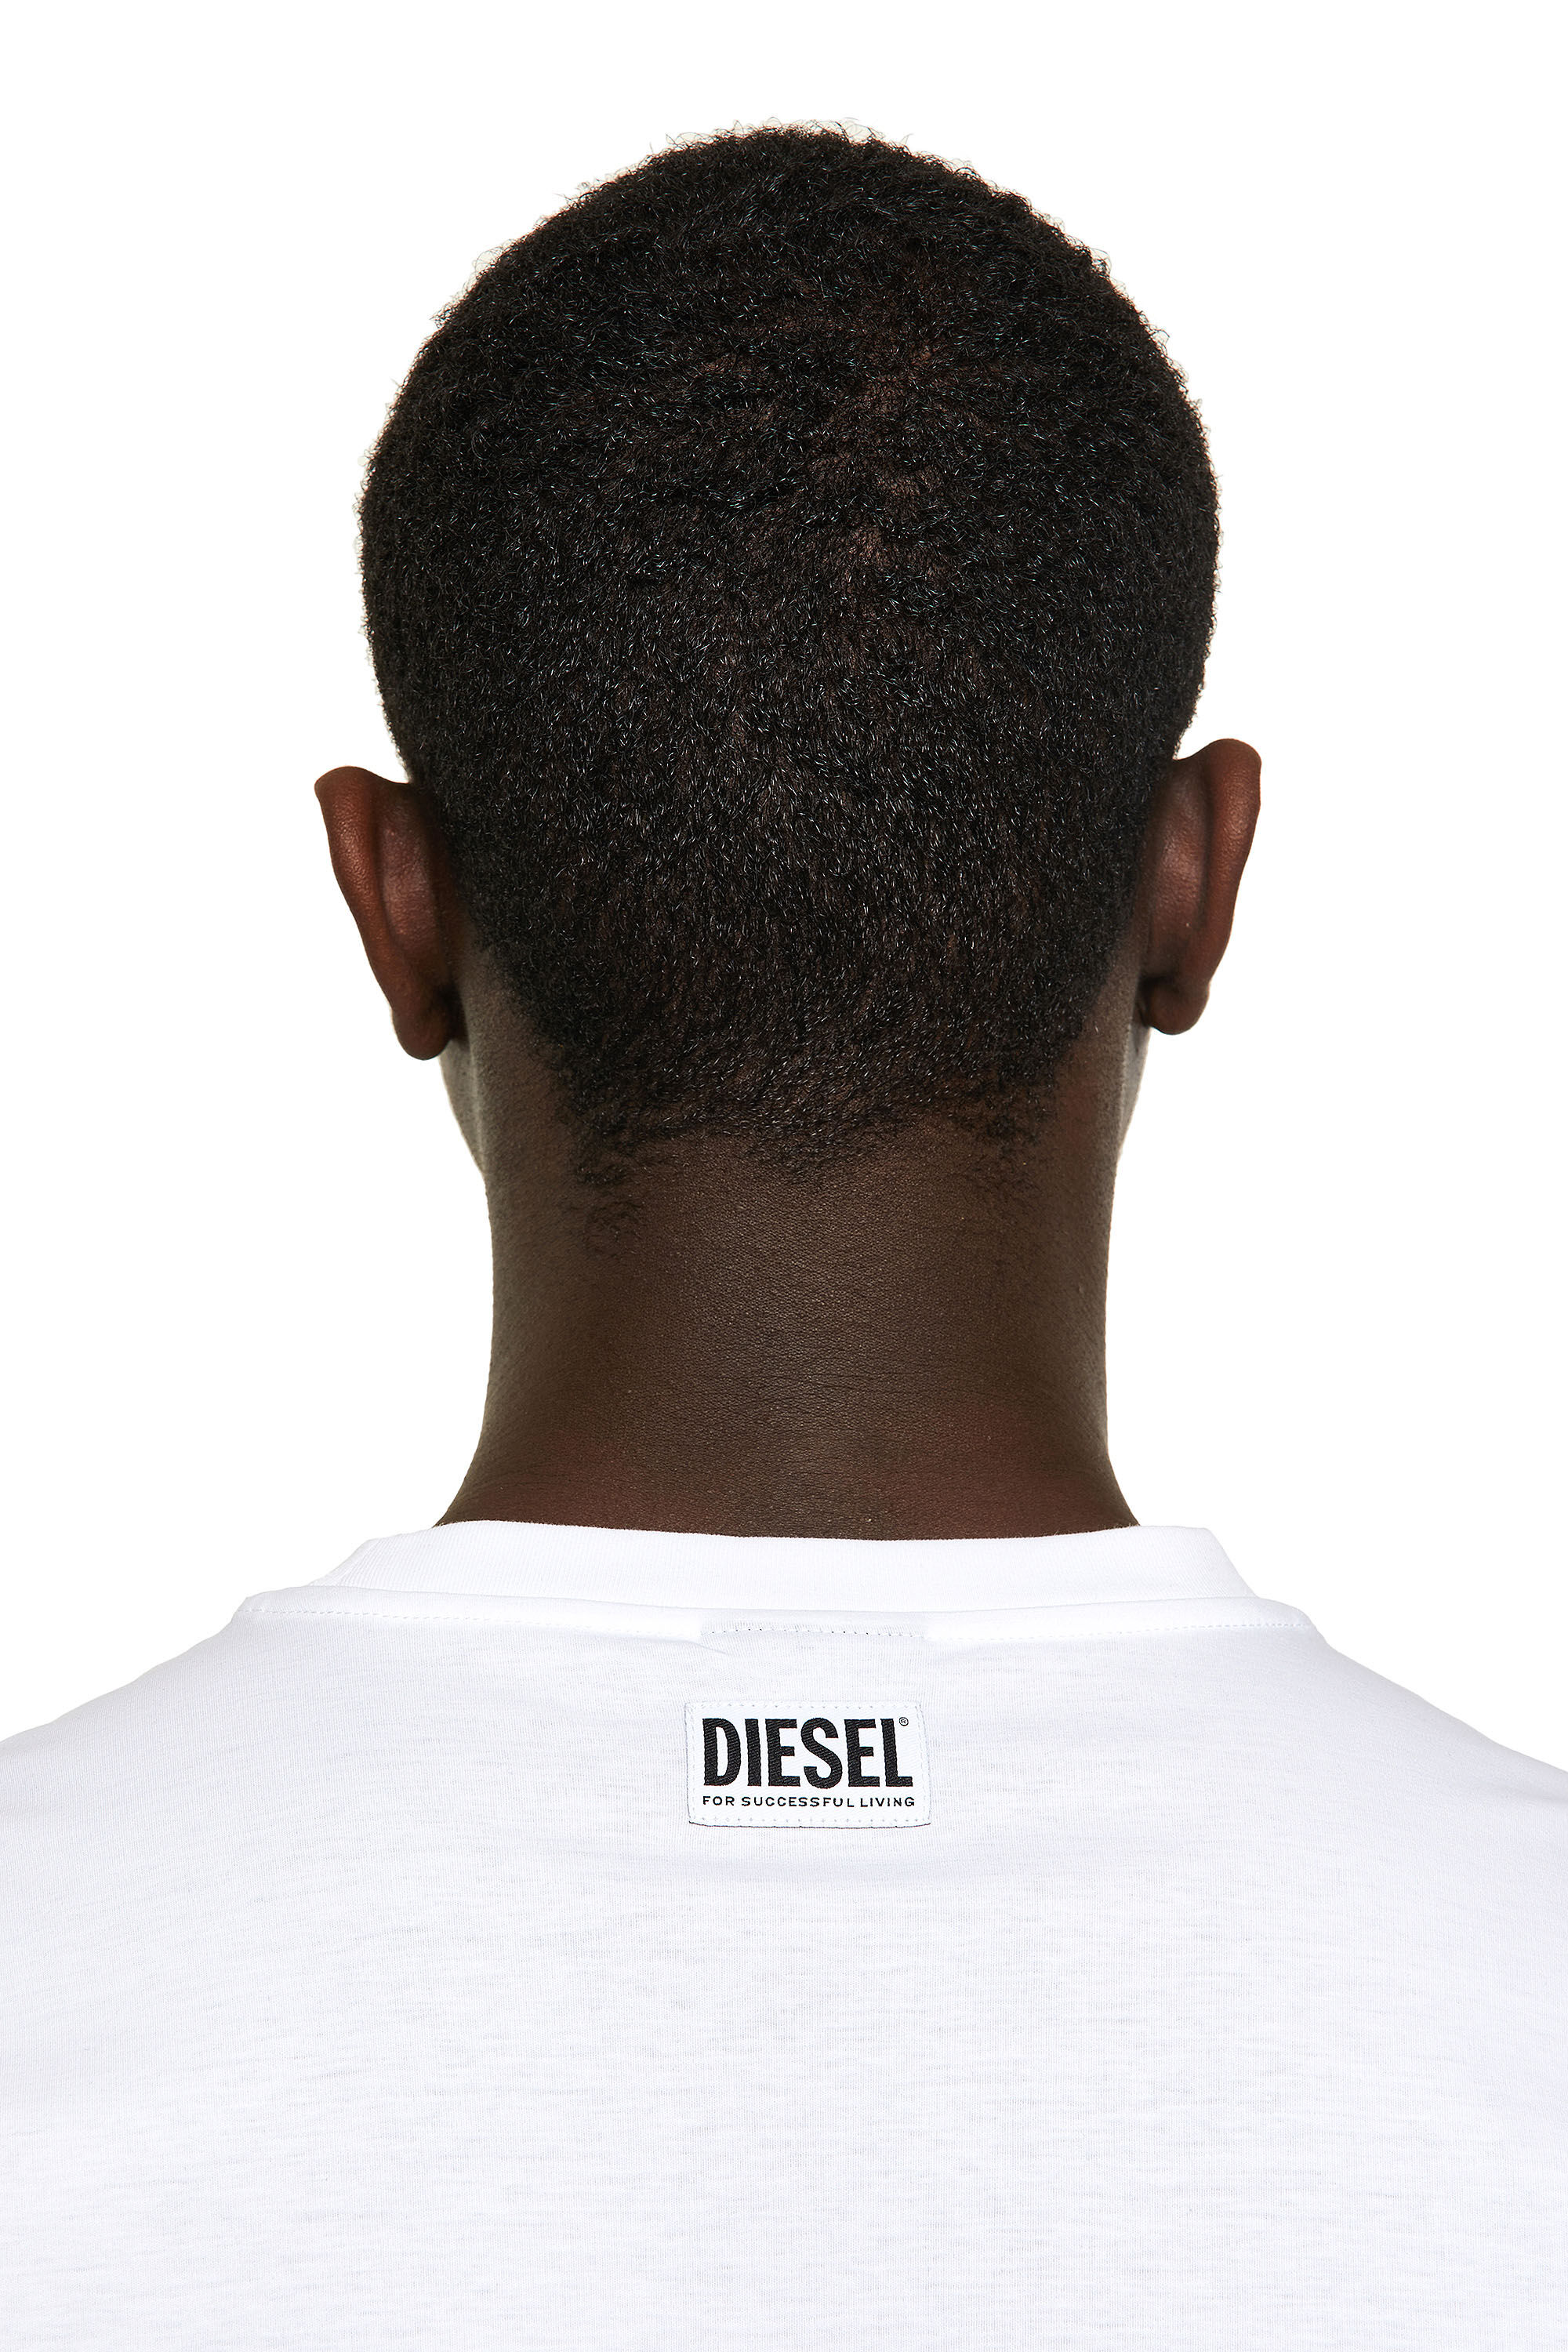 Diesel - T-JUST-VO, White - Image 4